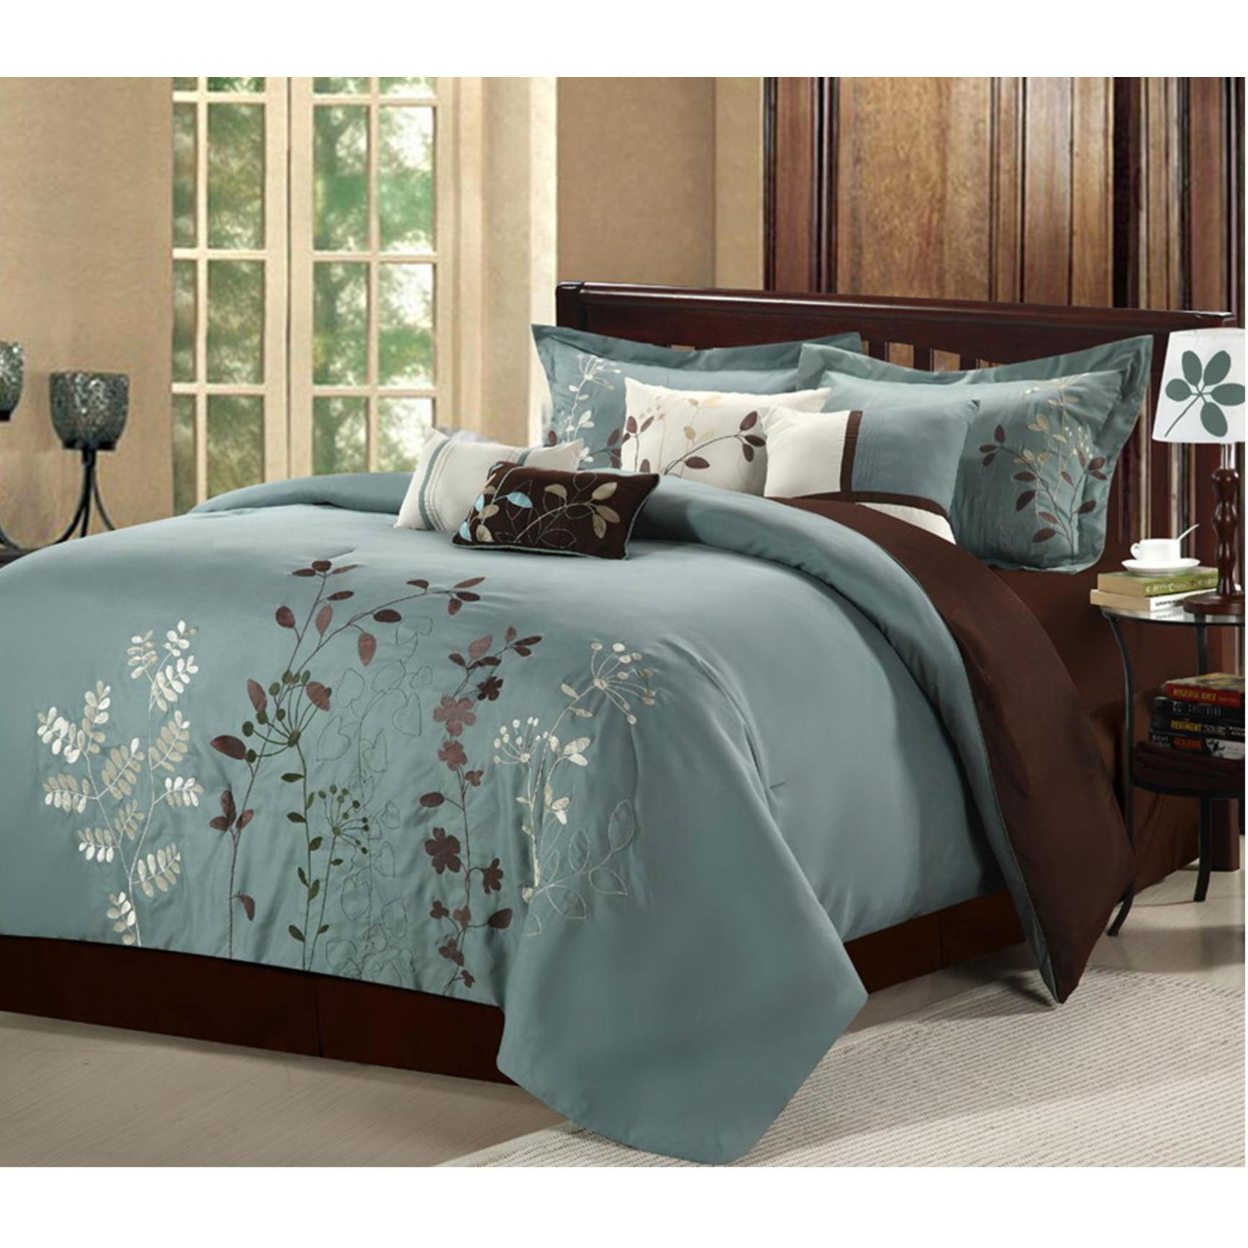 Brooke 8-Piece Embroidered Bed Comforter Set - Sage, King